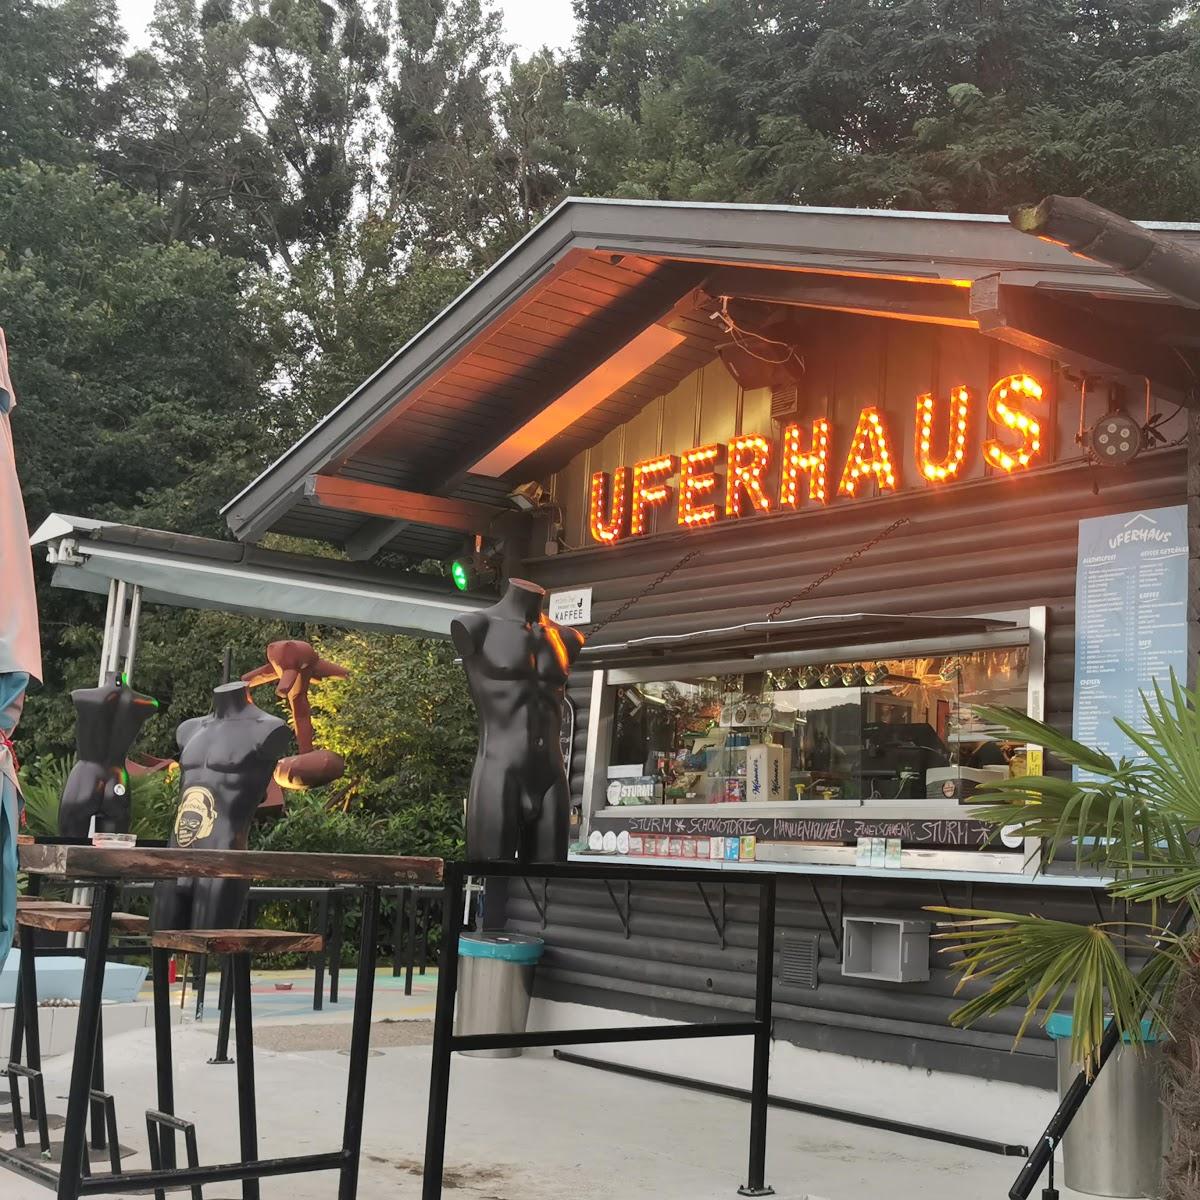 Restaurant "Uferhaus" in Klosterneuburg